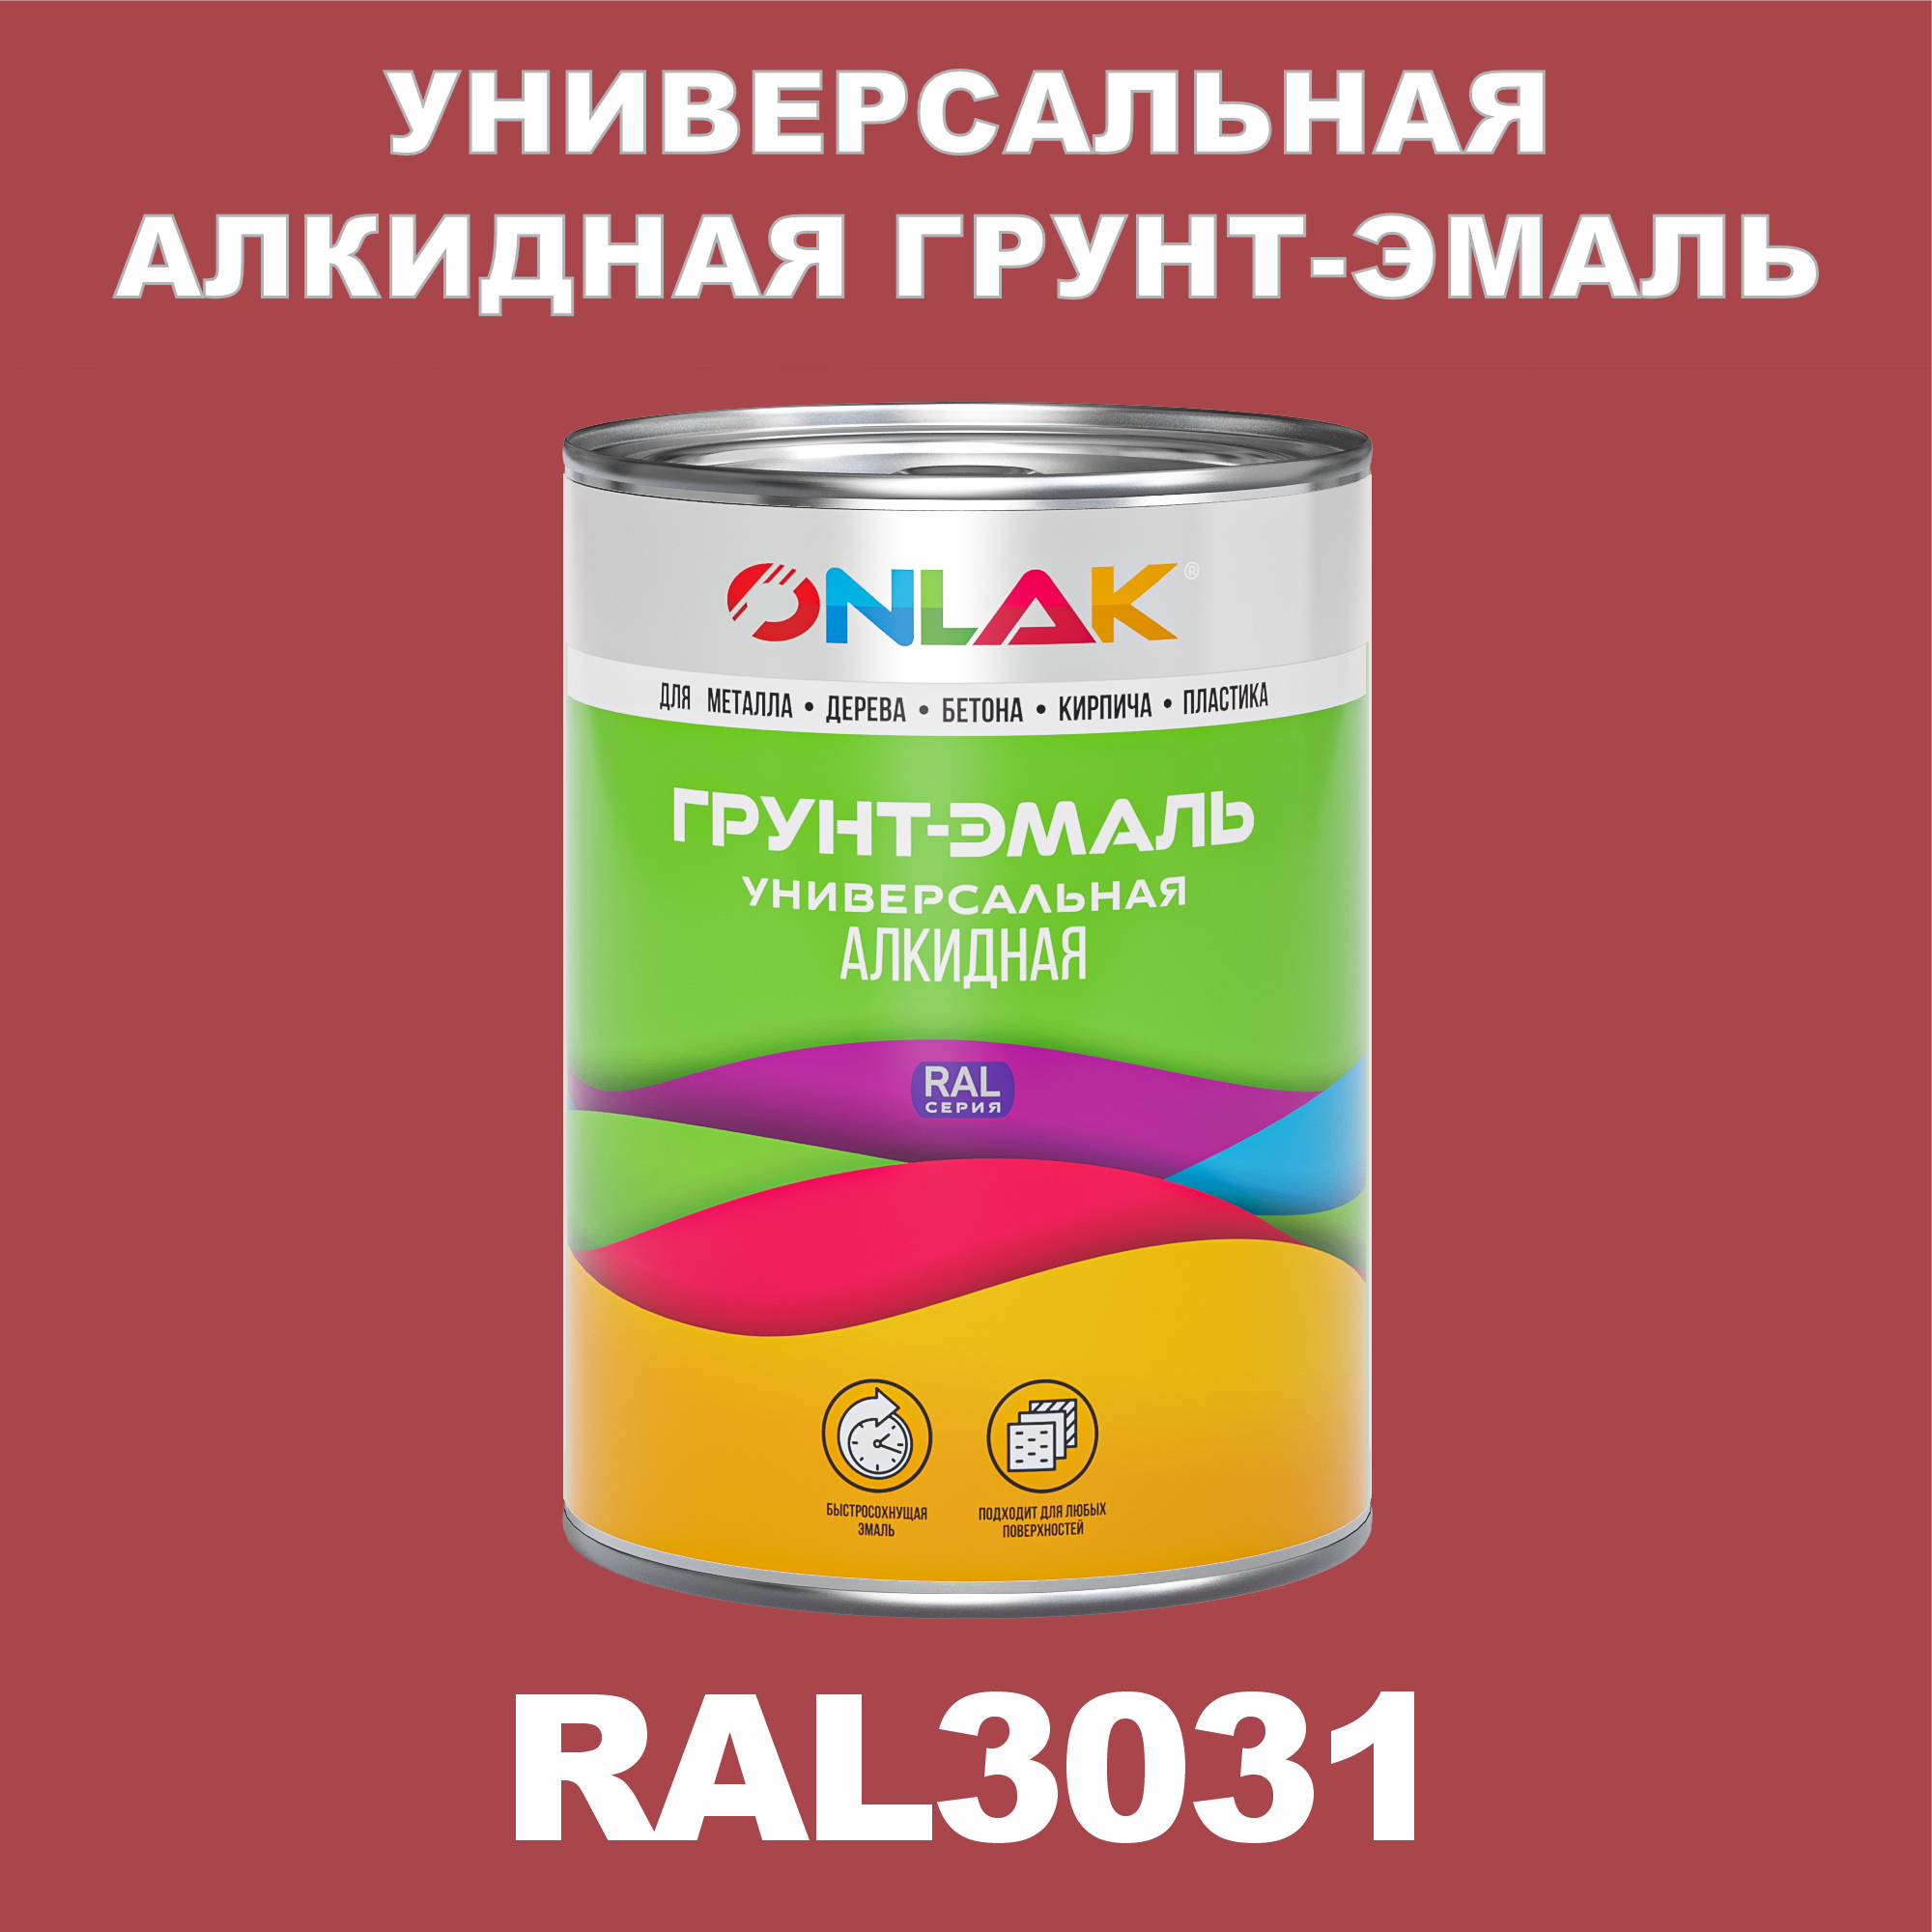 Грунт-эмаль ONLAK 1К RAL3031 антикоррозионная алкидная по металлу по ржавчине 1 кг специальная антикоррозионная грунт эмаль certa